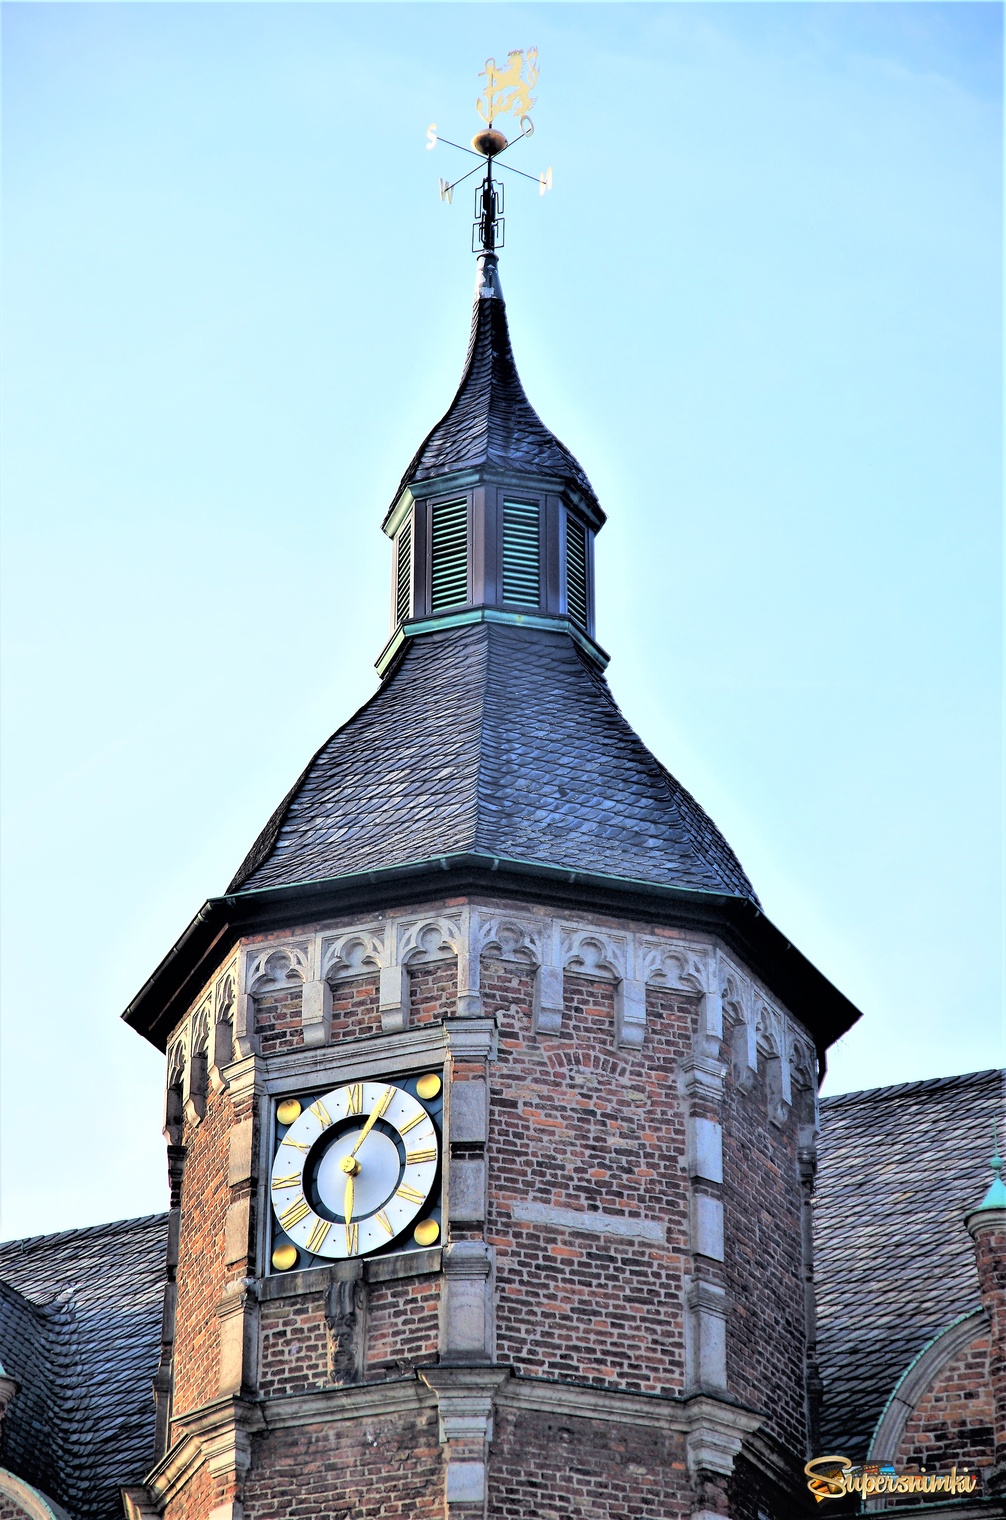 Часы на Дюссельдорфской ратуше.